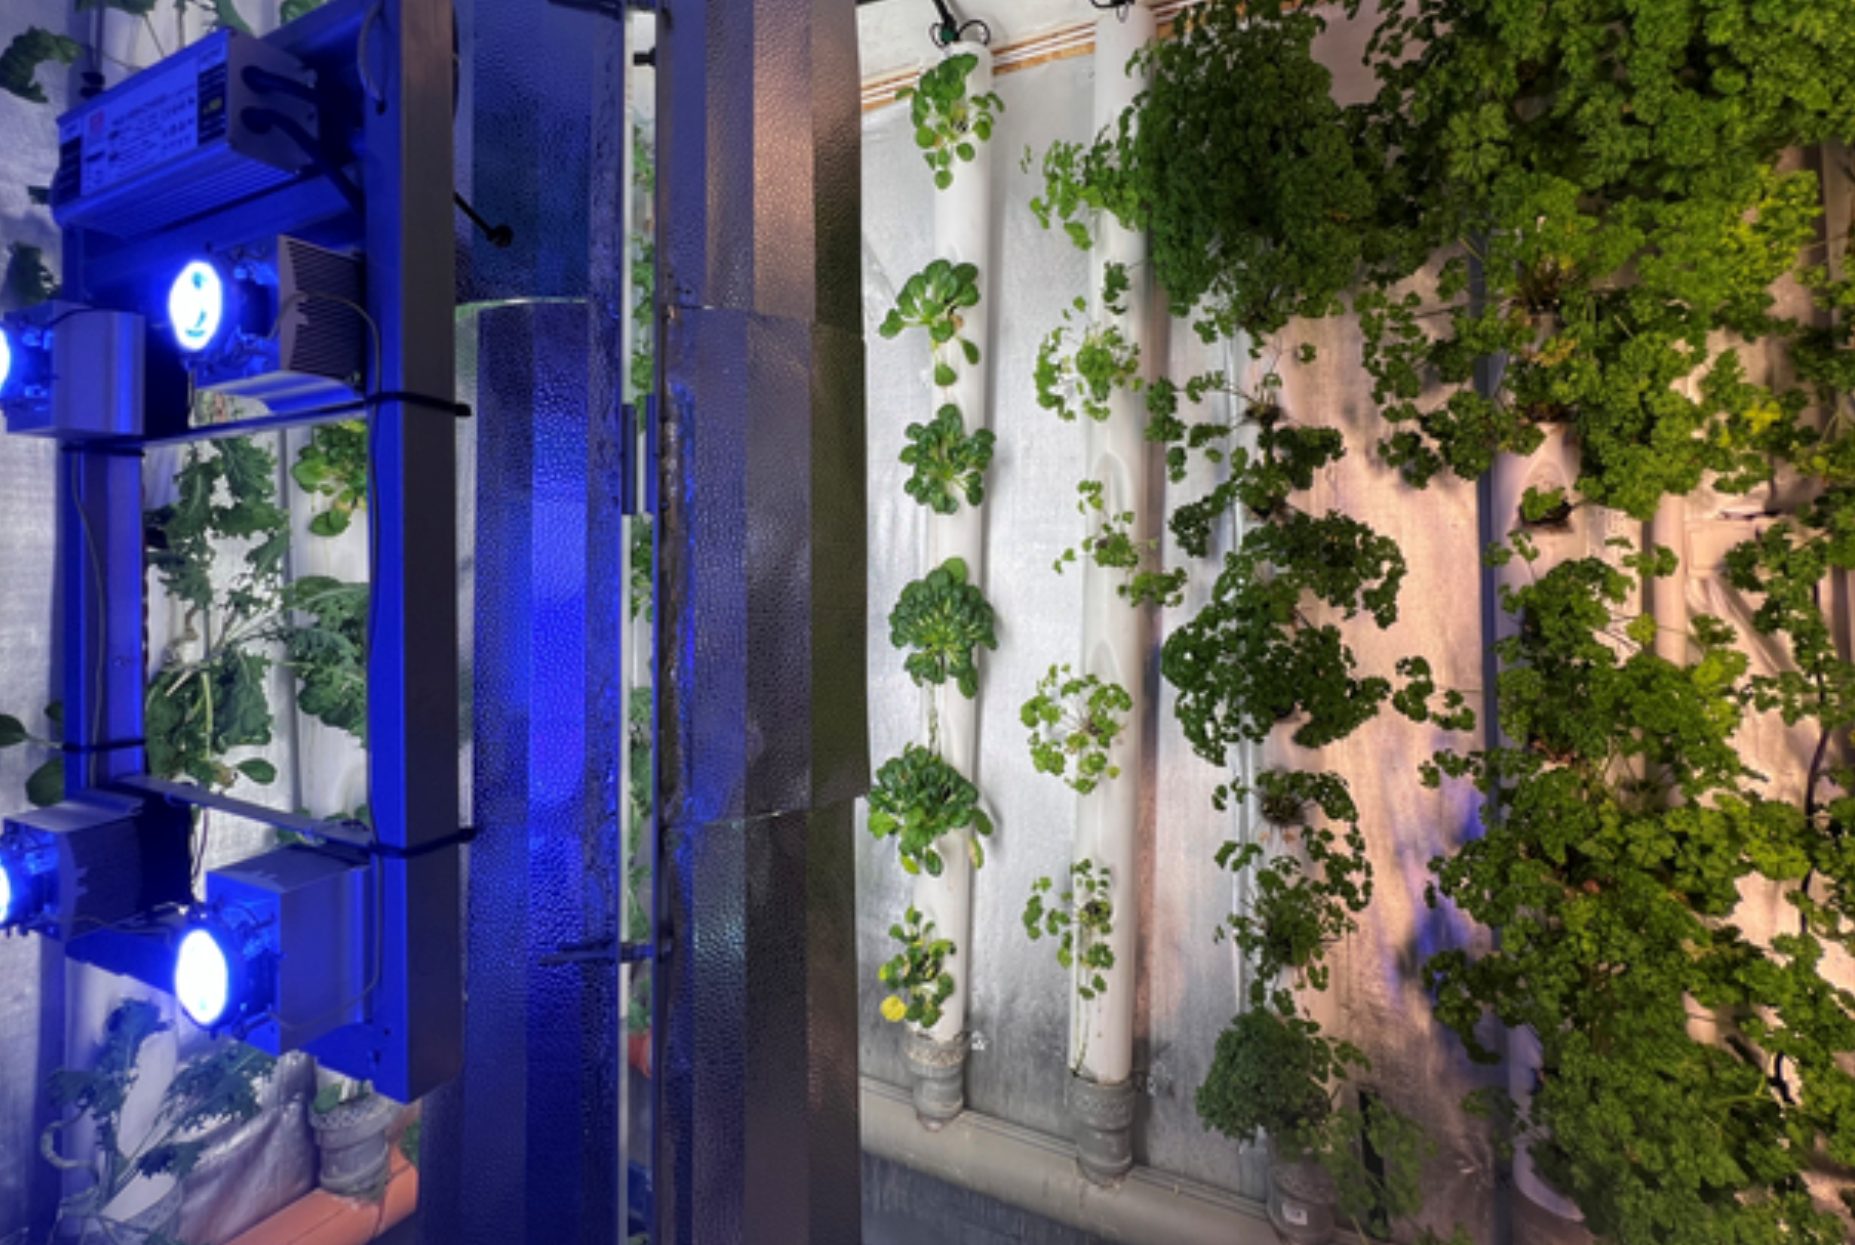 ista de cultivos hidropónicos verticales donde se cosechan lechugas gracias al calor generado por los servidores, proyecto de ICE en colaboracion con Containing Greens. ICE Data Center, Lulea, Suecia. Marina Otero